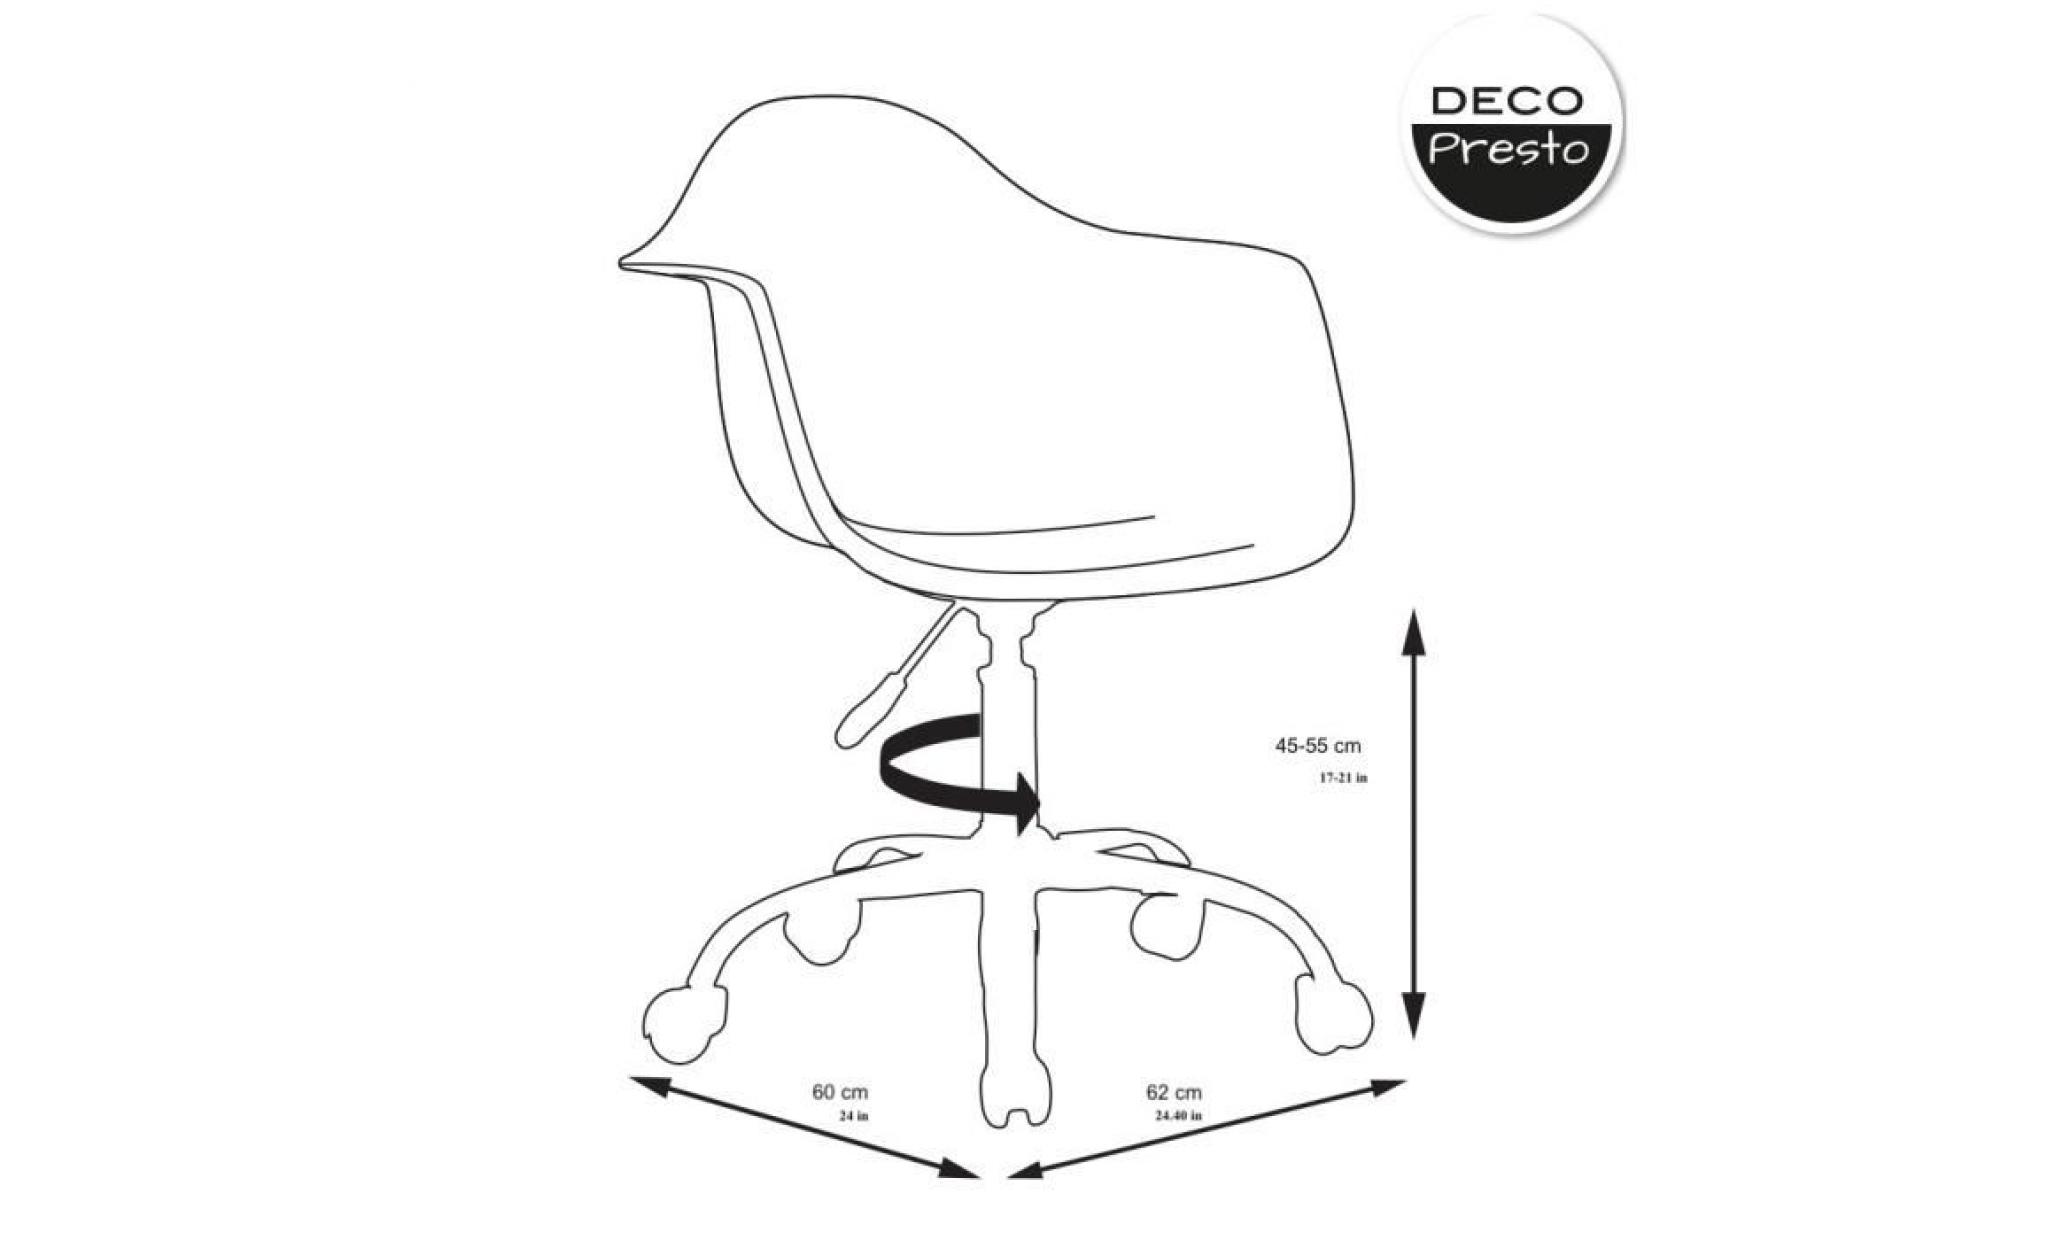 1 x fauteuil bureau scandinave pivotant roulettes  patchwork noir blanc pieds: acier chrome decopresto dp dao pn 1 pas cher